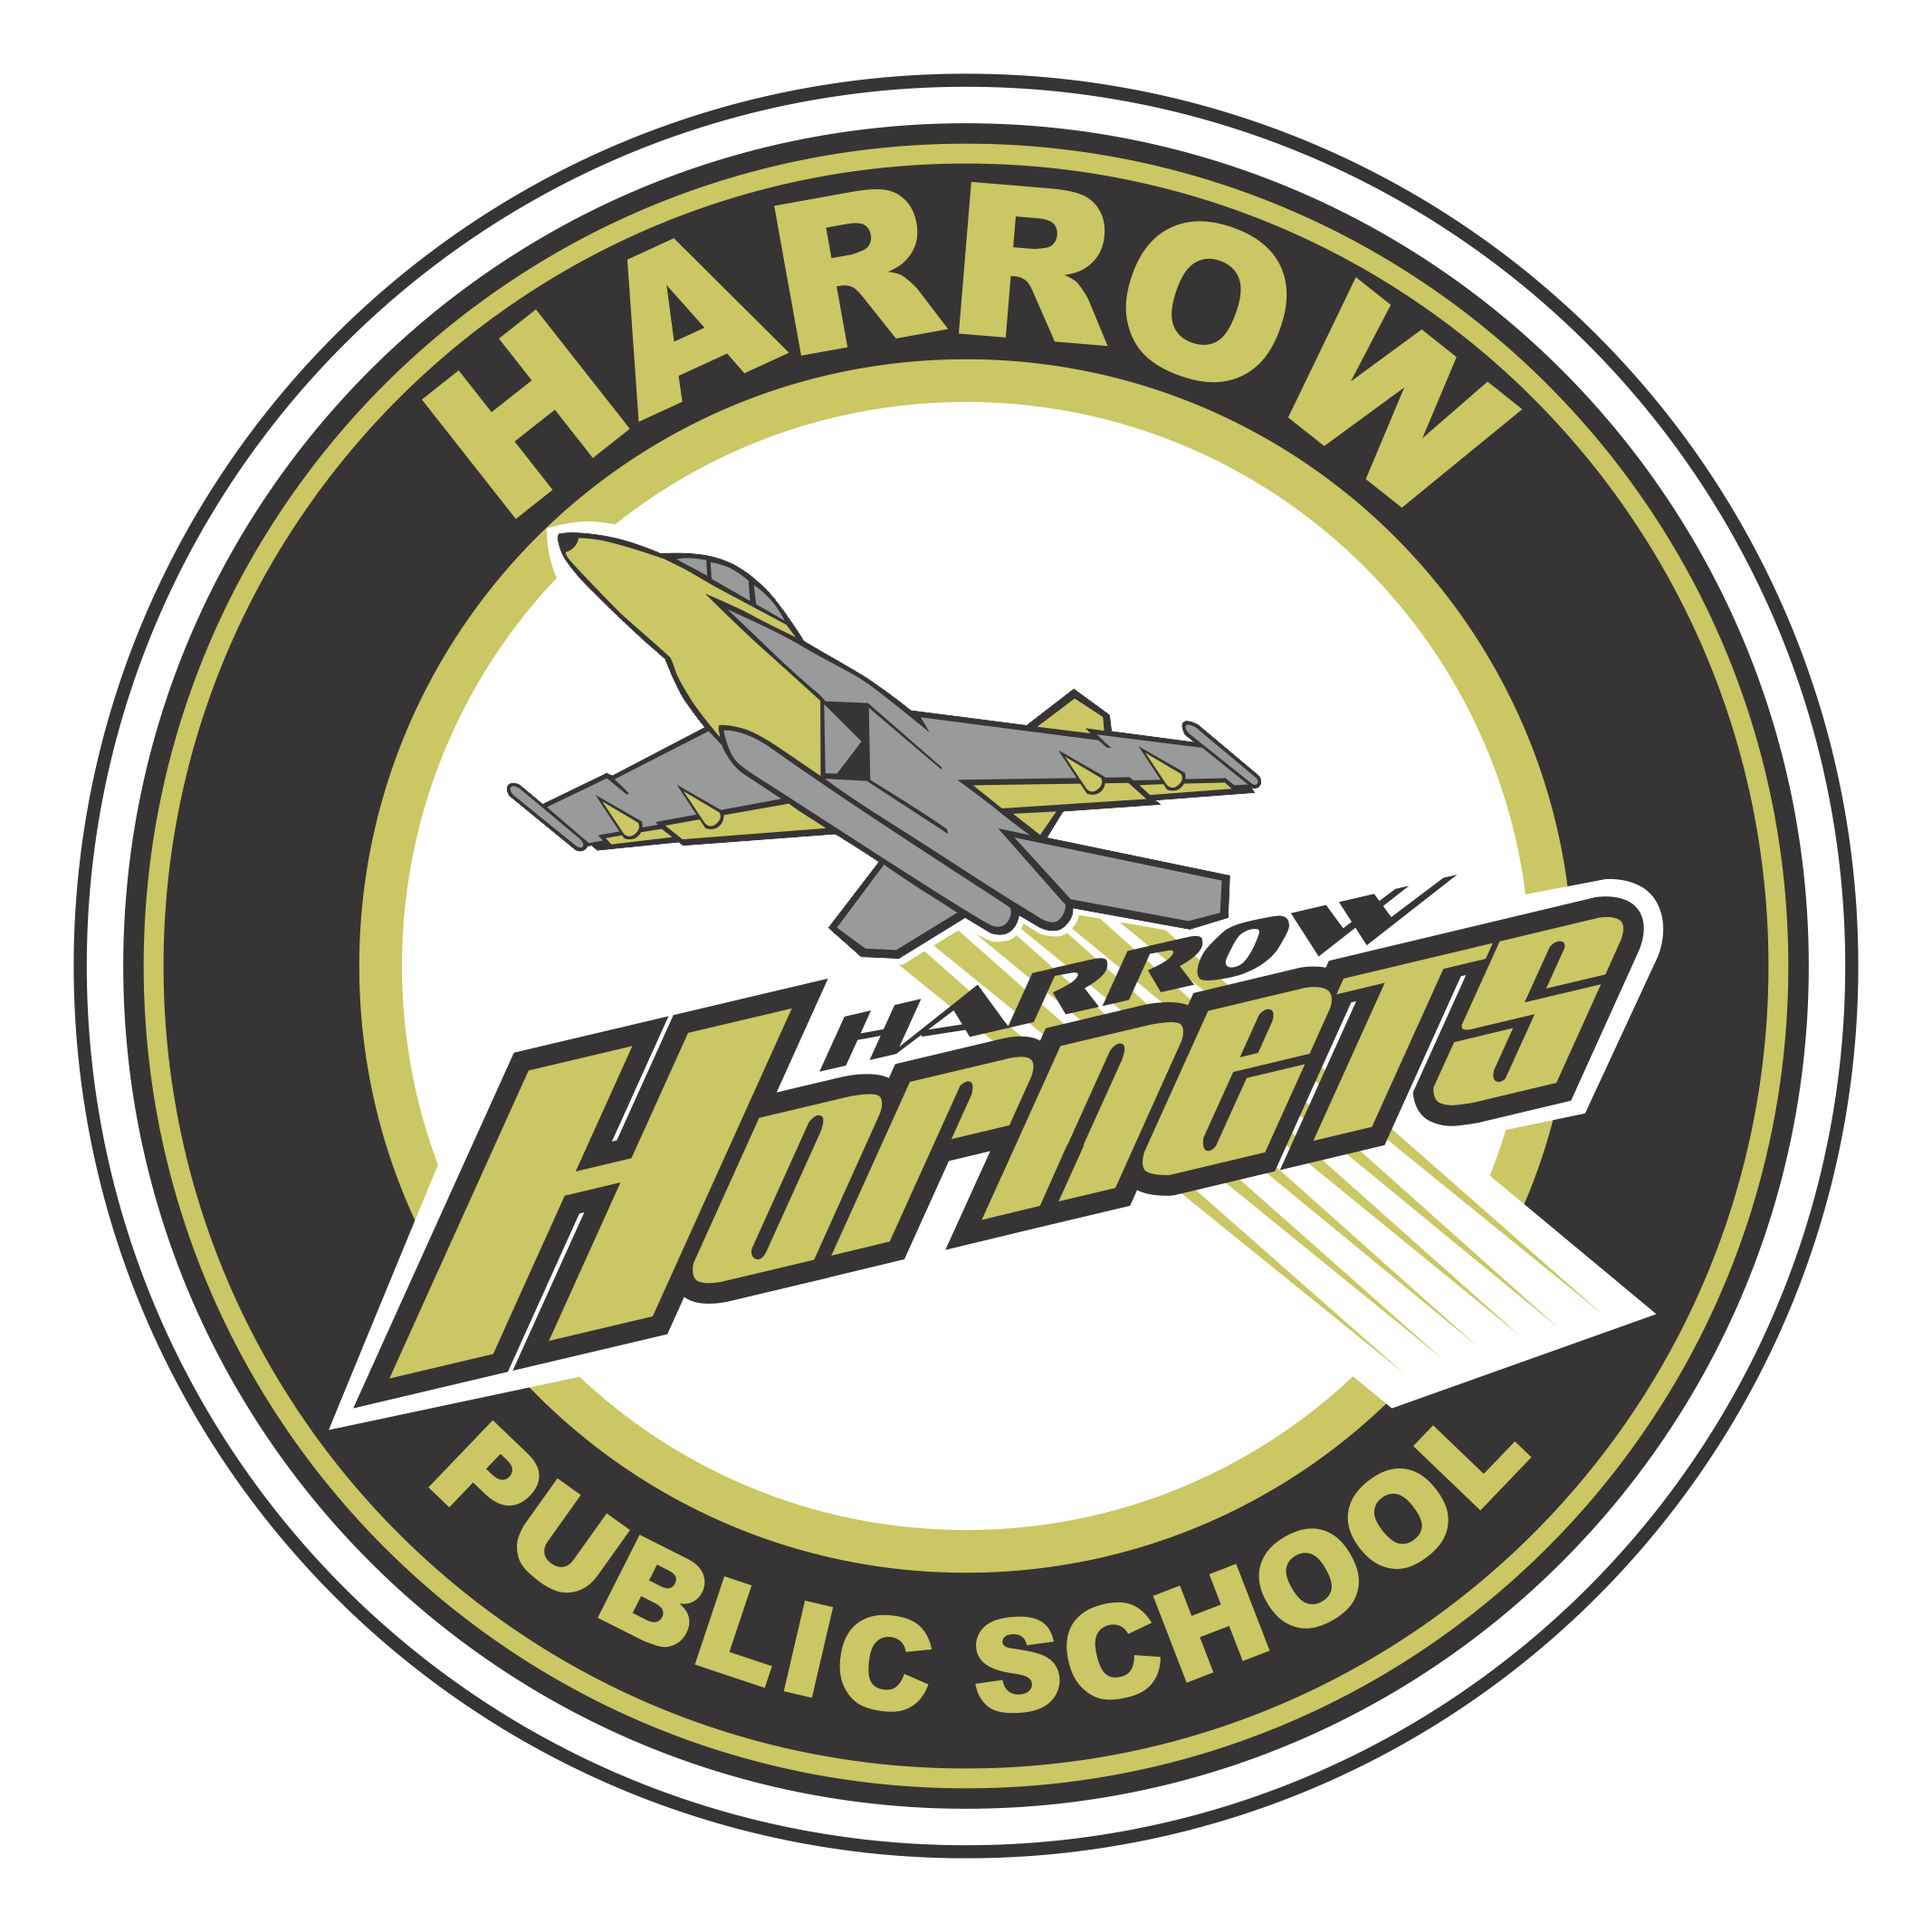 Harrow Public School footer logo